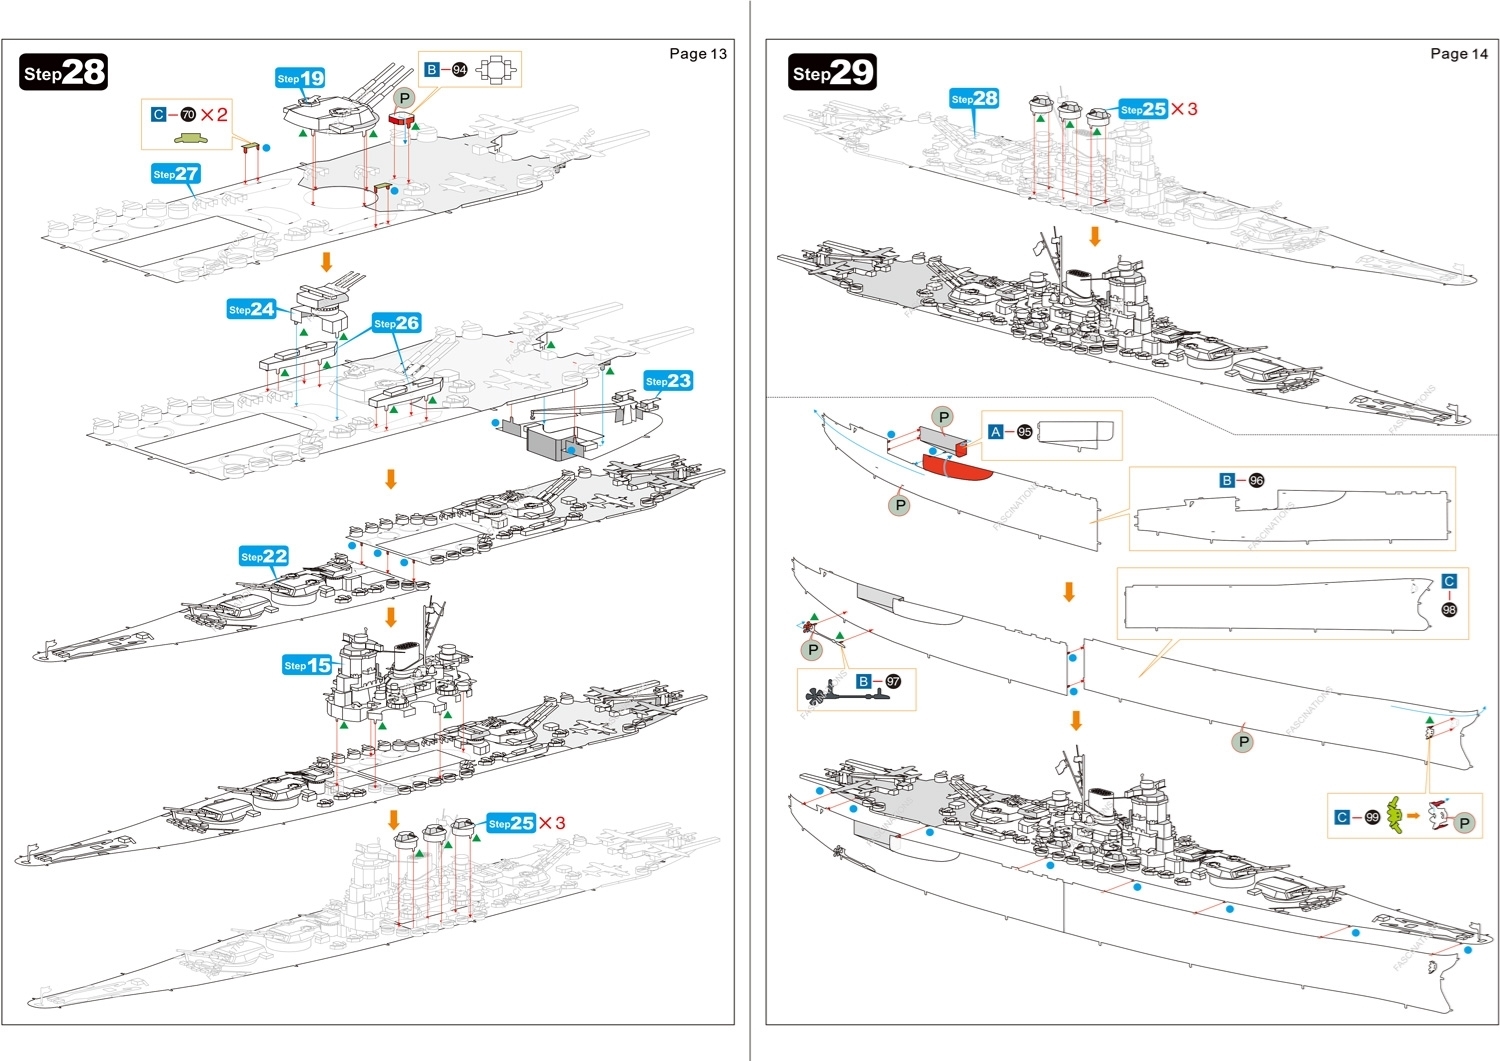 Picture of Premium Series Yamato Battleship